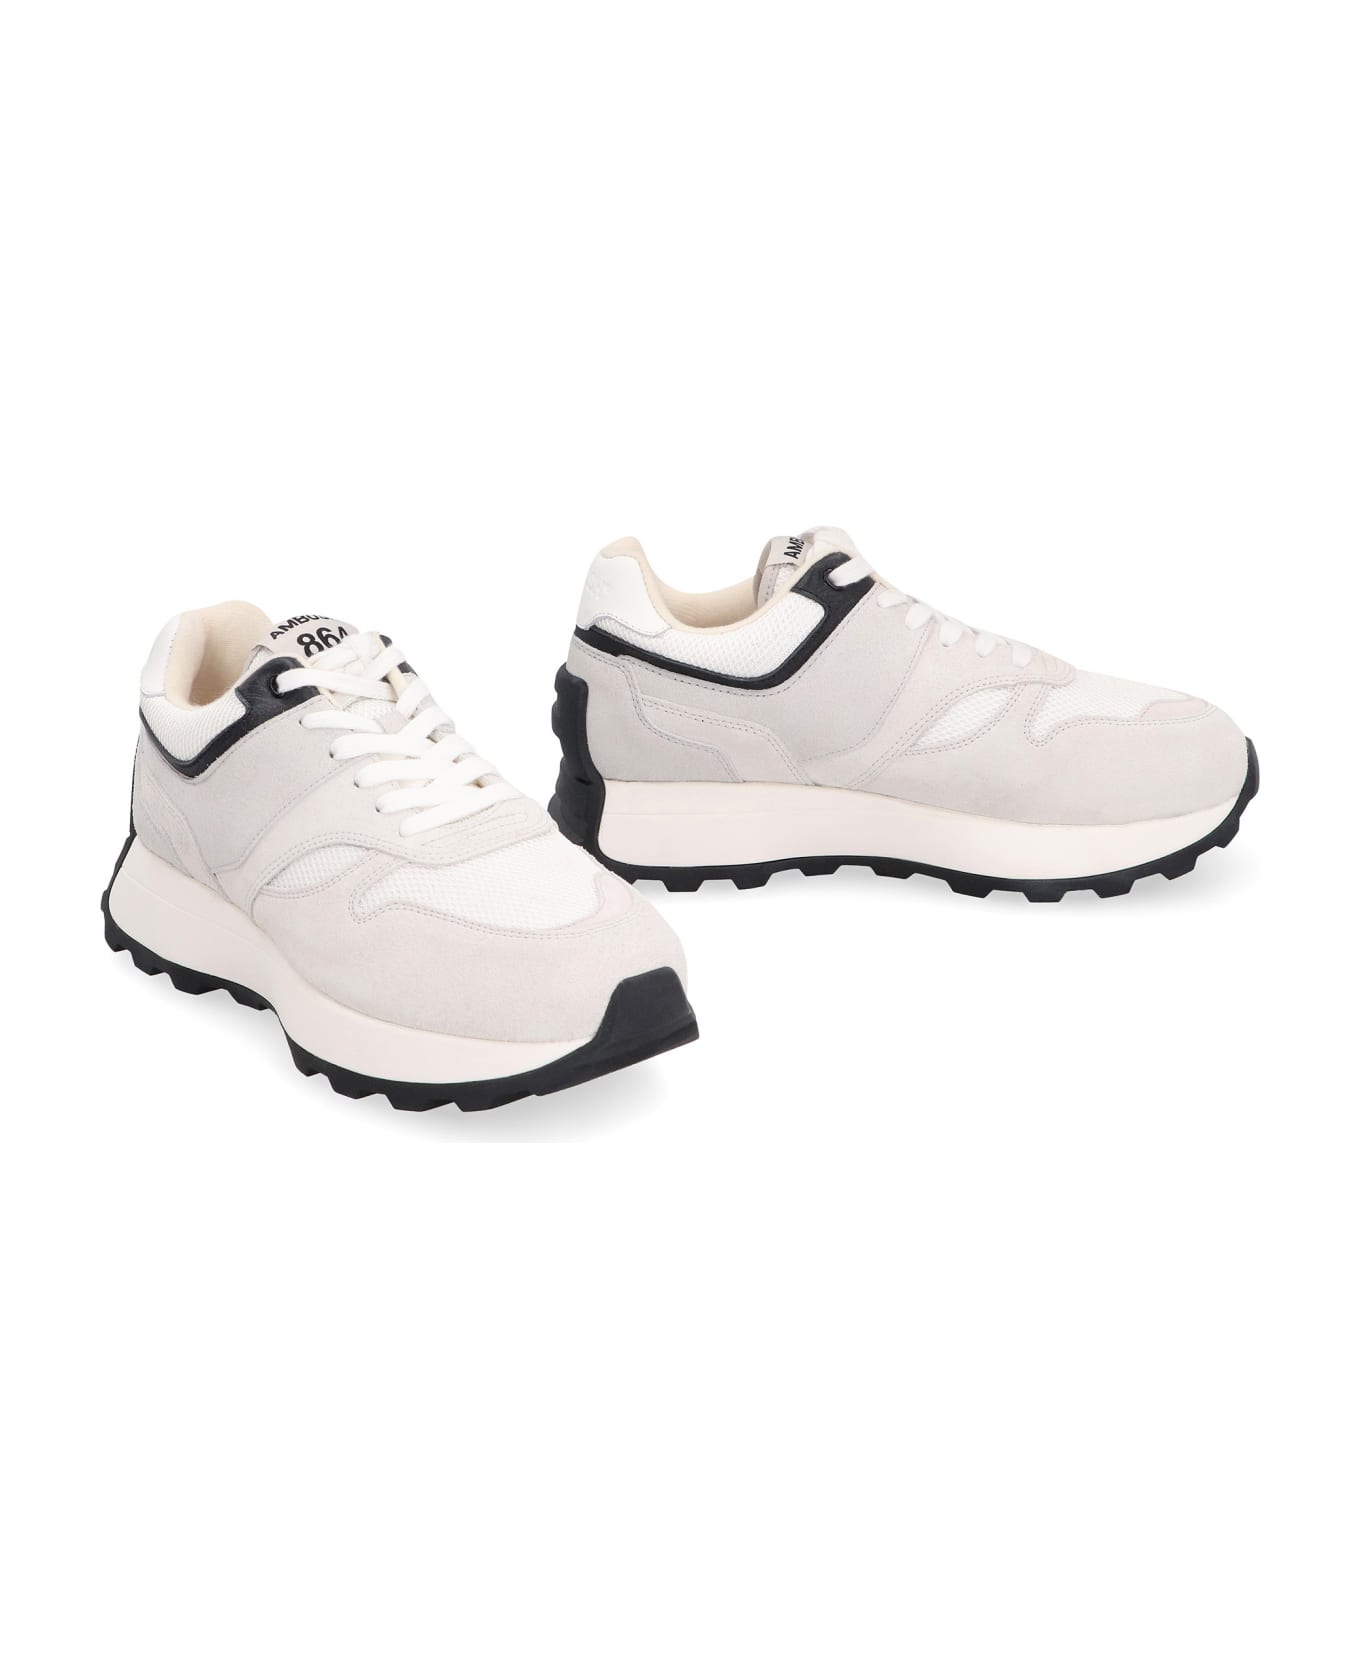 AMBUSH Suede And Nylon Sneakers - White